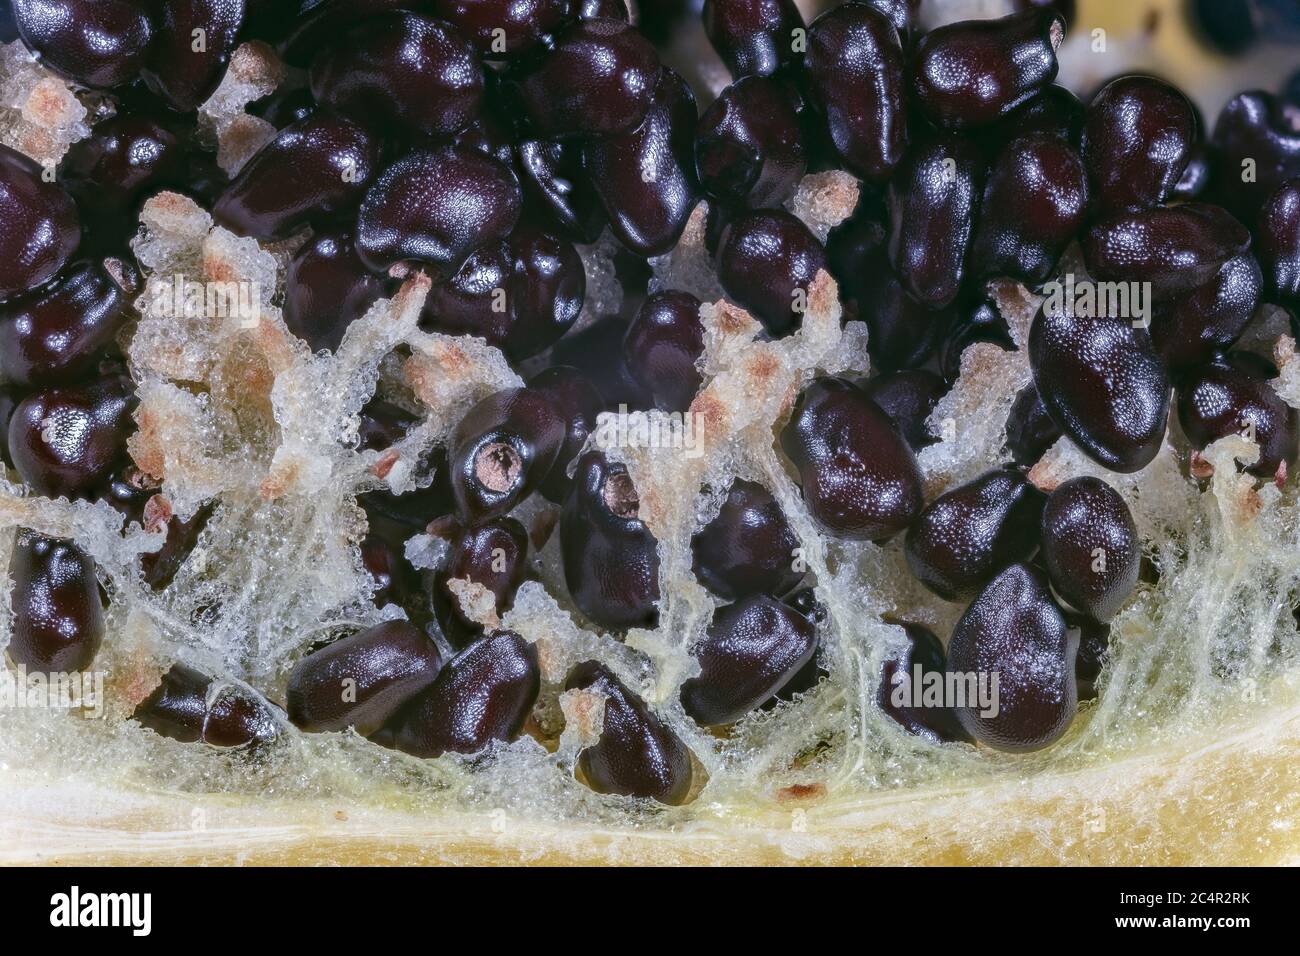 Anatomia di un pesce uncino Barrel Cactus frutta Foto Stock